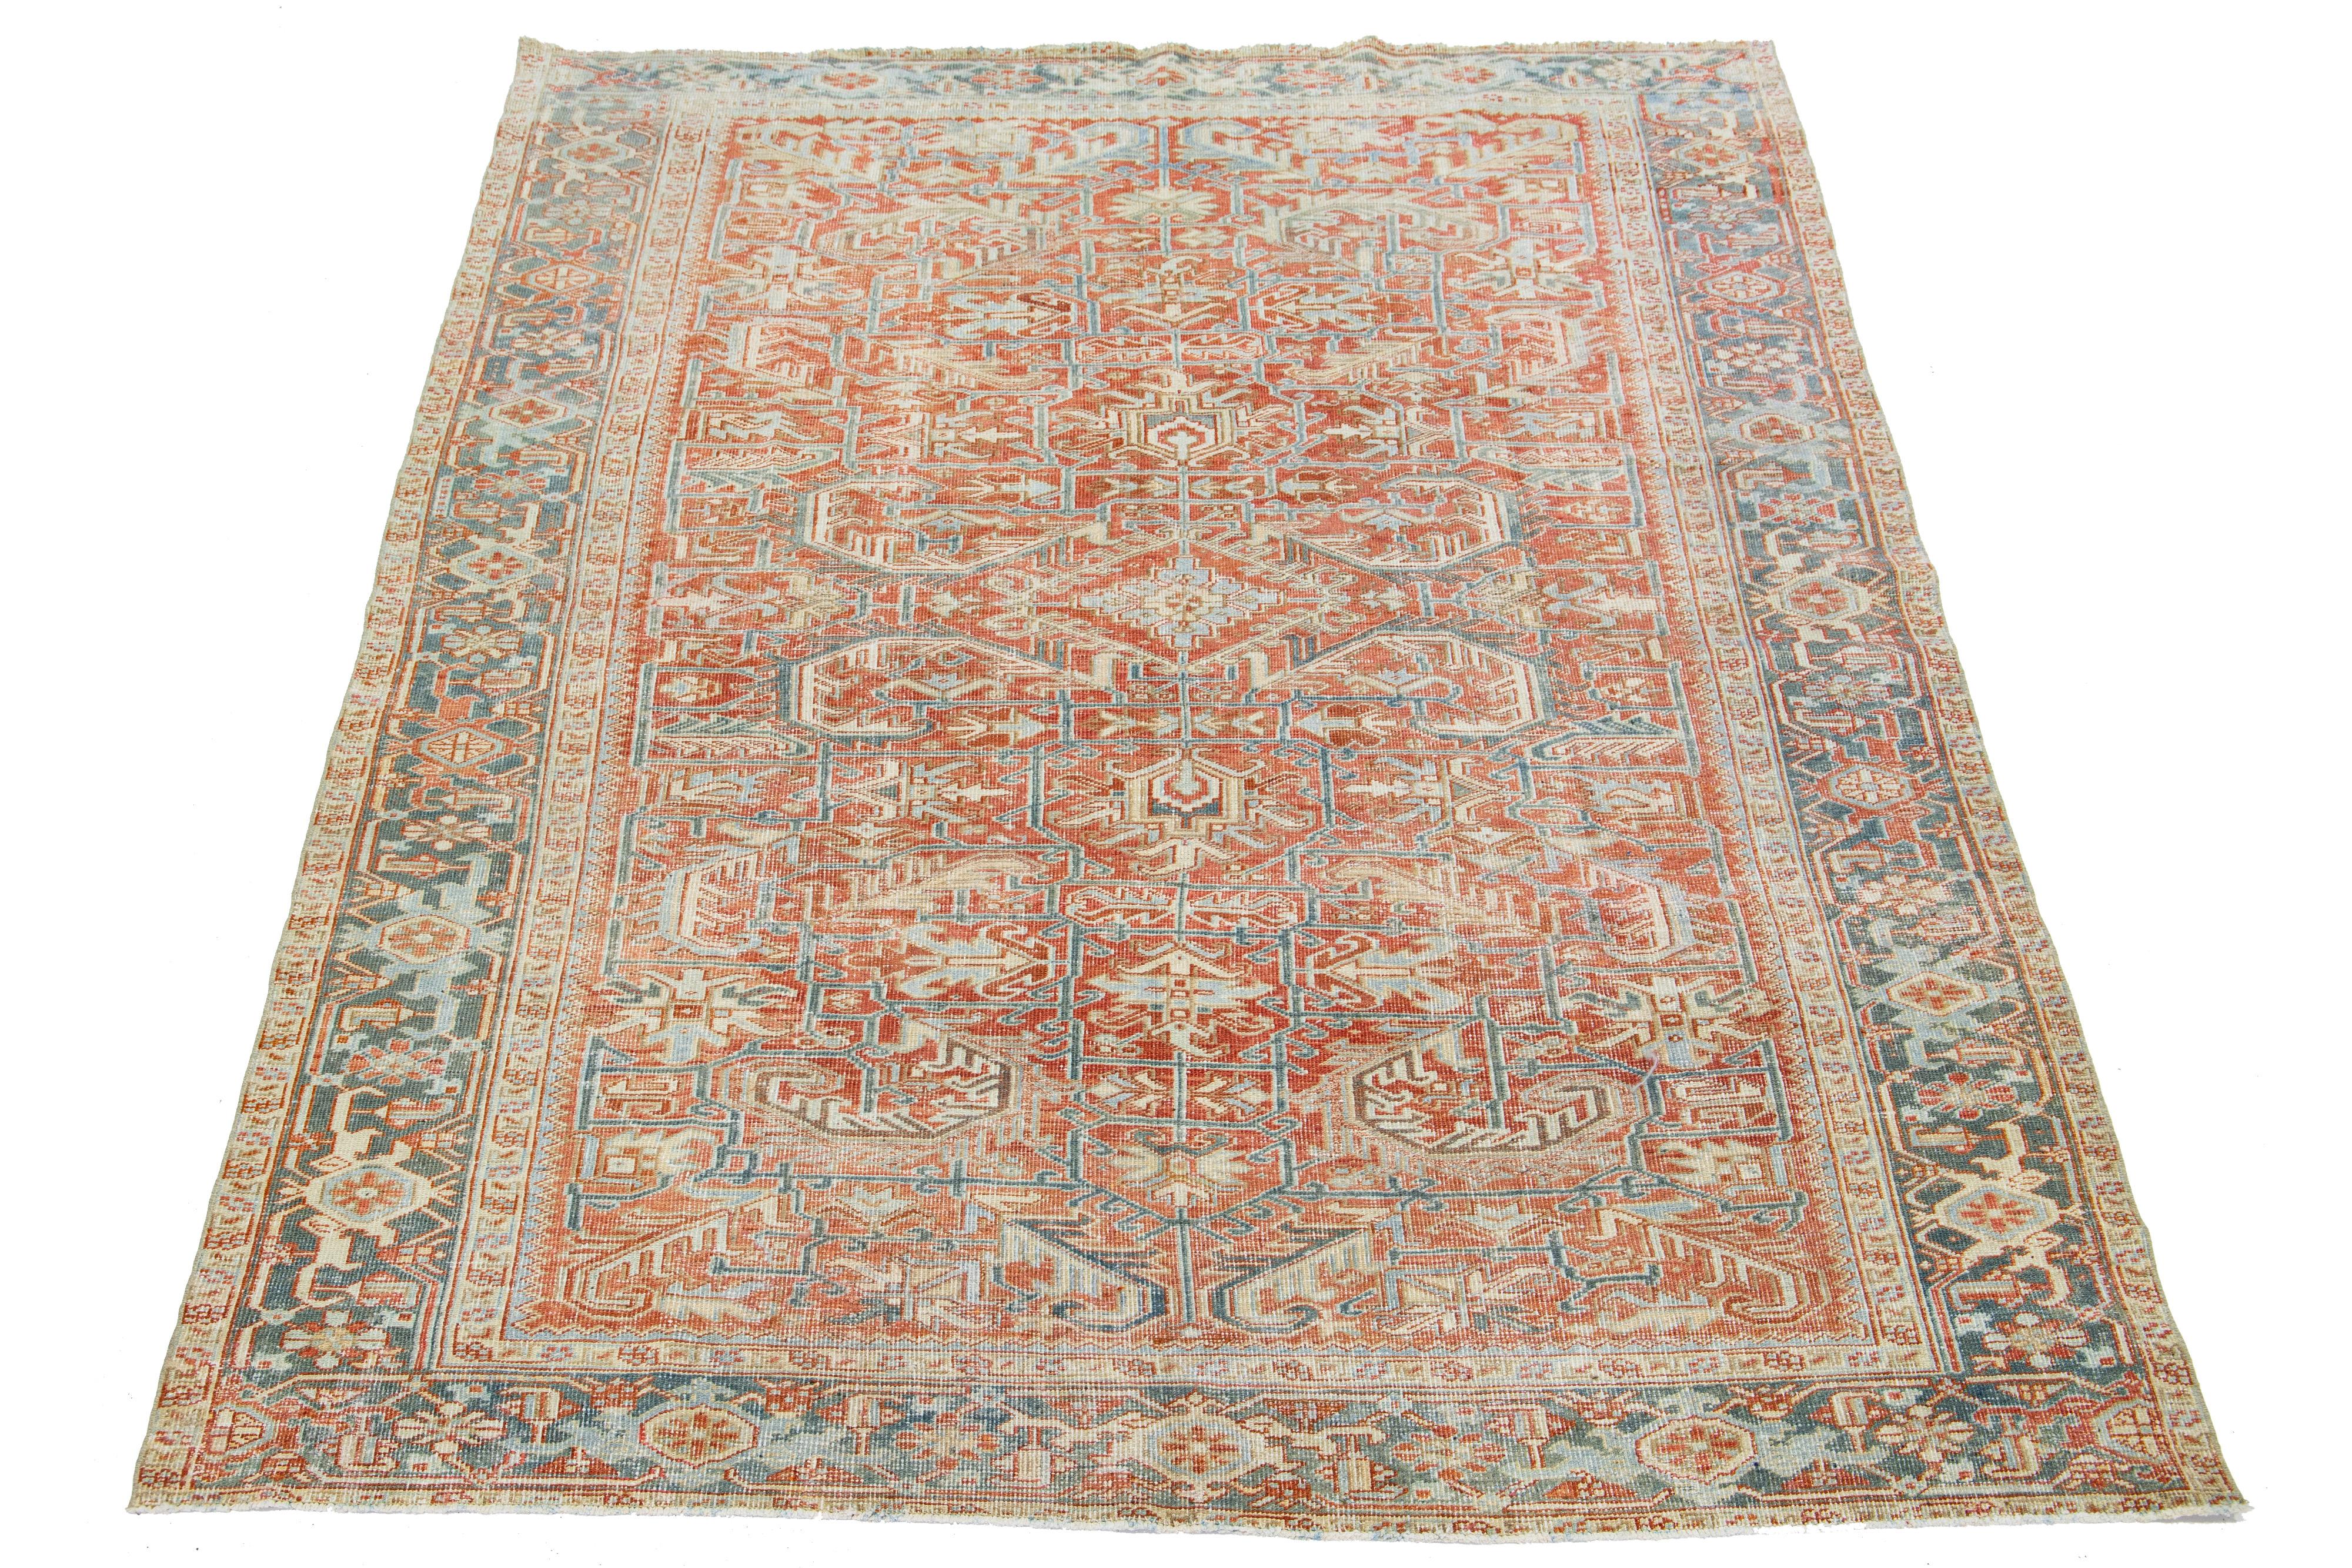 Dieser antike persische Heriz-Teppich zeigt ein beeindruckendes Gesamtdesign und ist aus handgeknüpfter Wolle gefertigt. Der rostfarbene Hintergrund bildet einen markanten Hintergrund für das bezaubernde geometrische Blumenmuster, das mit Blau-,